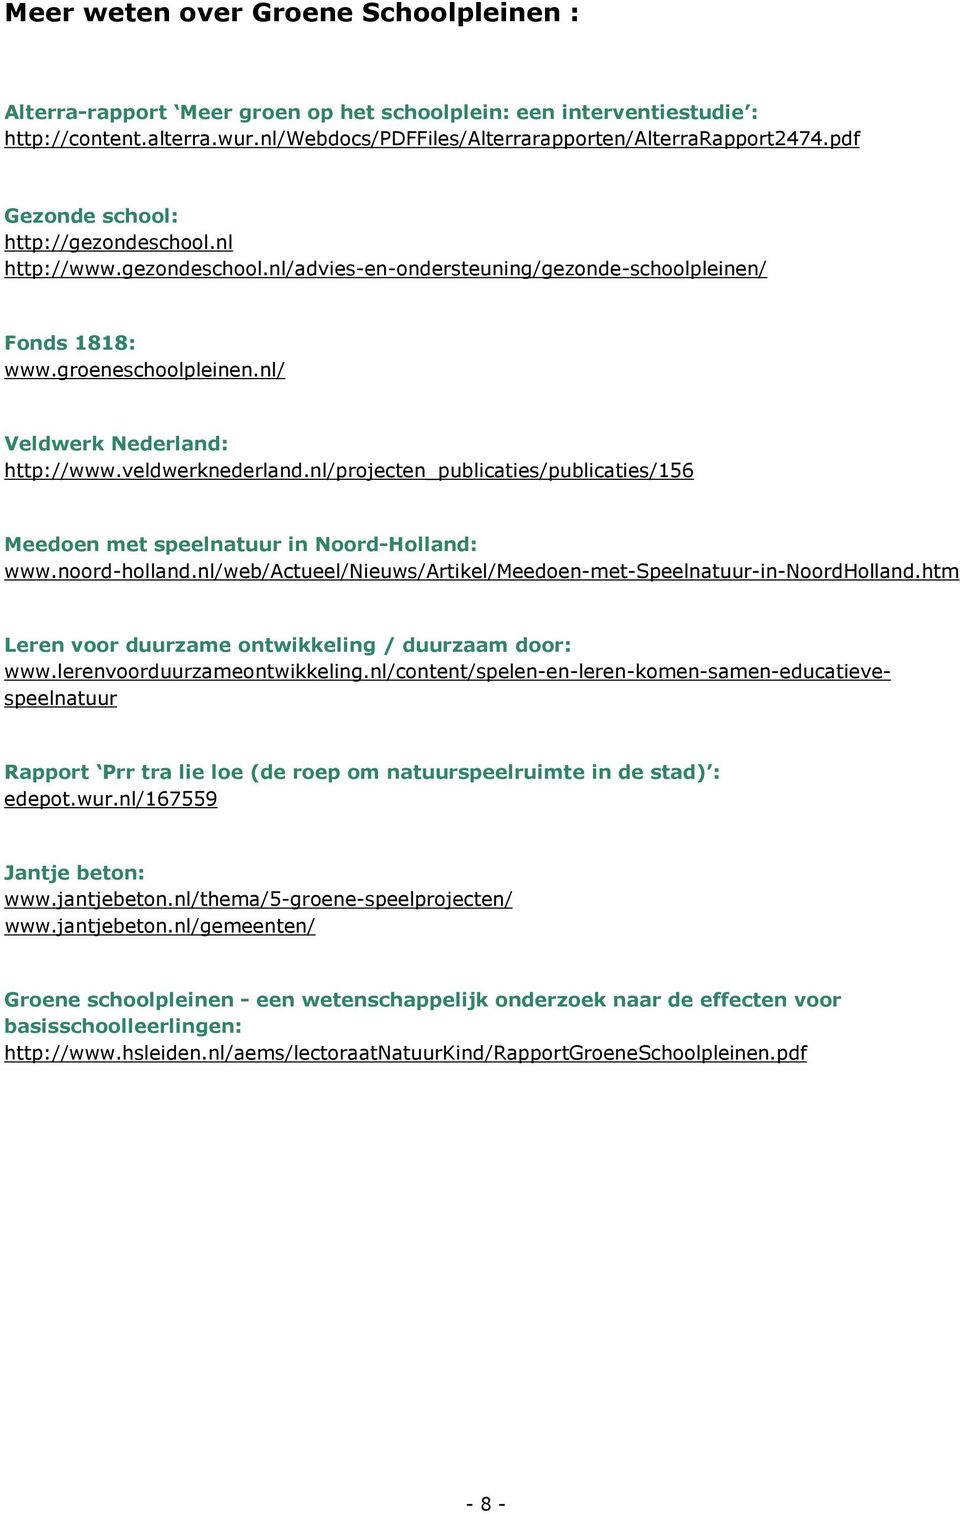 veldwerknederland.nl/projecten_publicaties/publicaties/156 Meedoen met speelnatuur in Noord-Holland: www.noord-holland.nl/web/actueel/nieuws/artikel/meedoen-met-speelnatuur-in-noordholland.